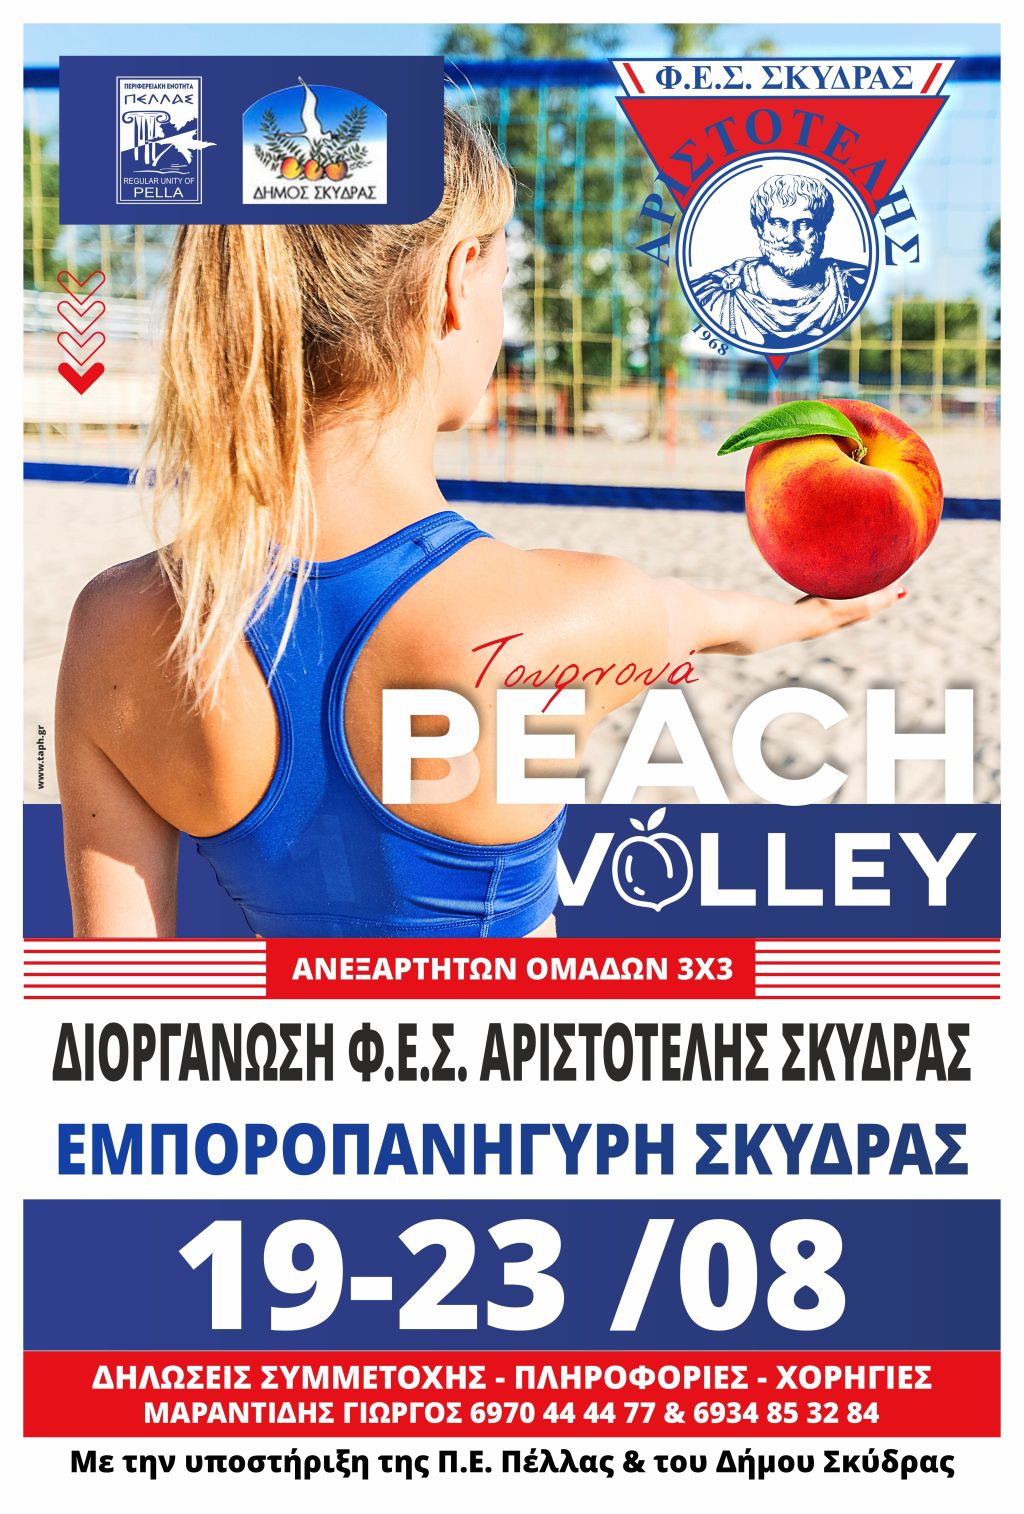 Τουρνουά ...Peach Volley από τον Αριστοτέλη